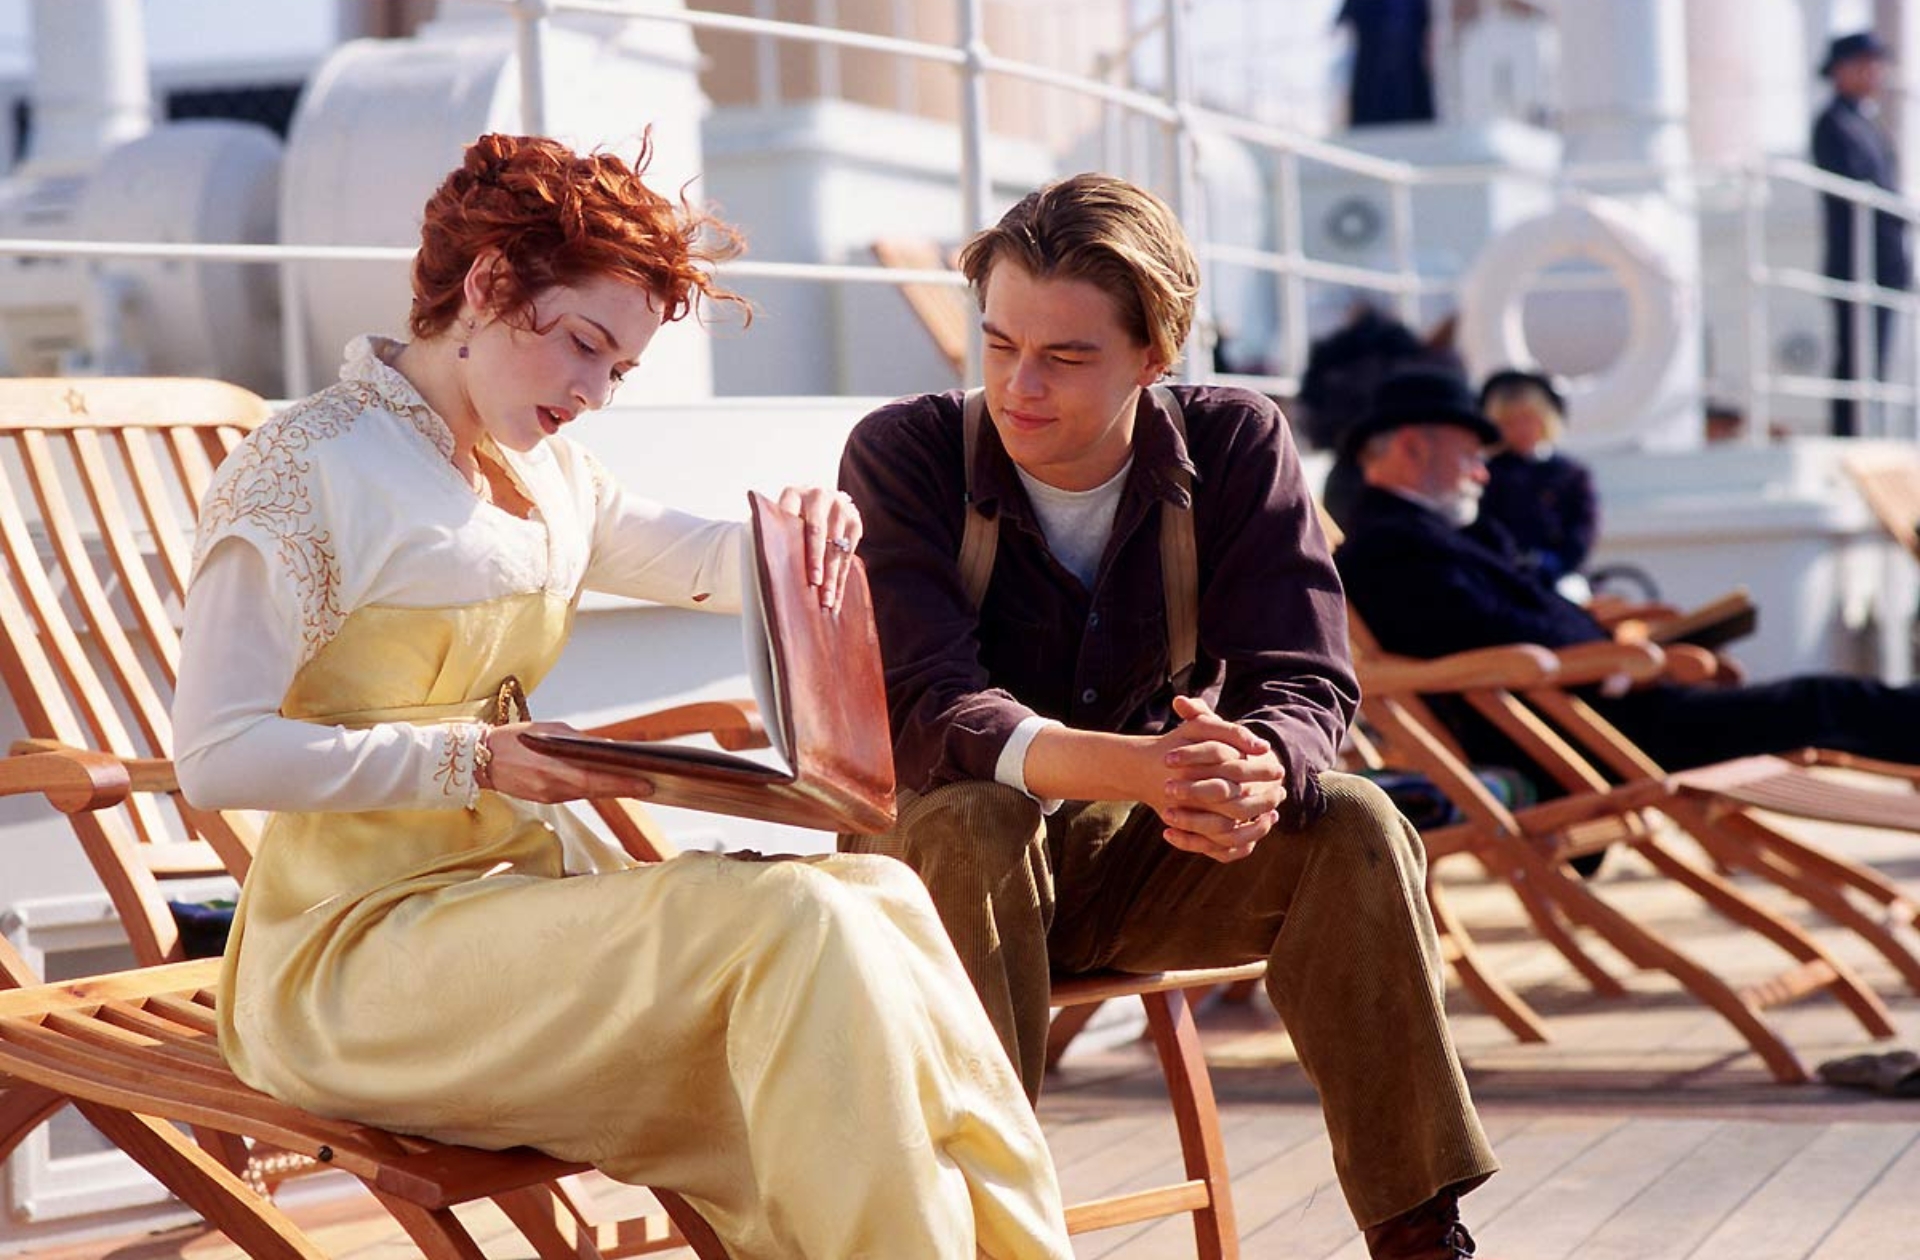 Cet objet iconique du film Titanic a été vendu pour 660 000 dollars aux enchères